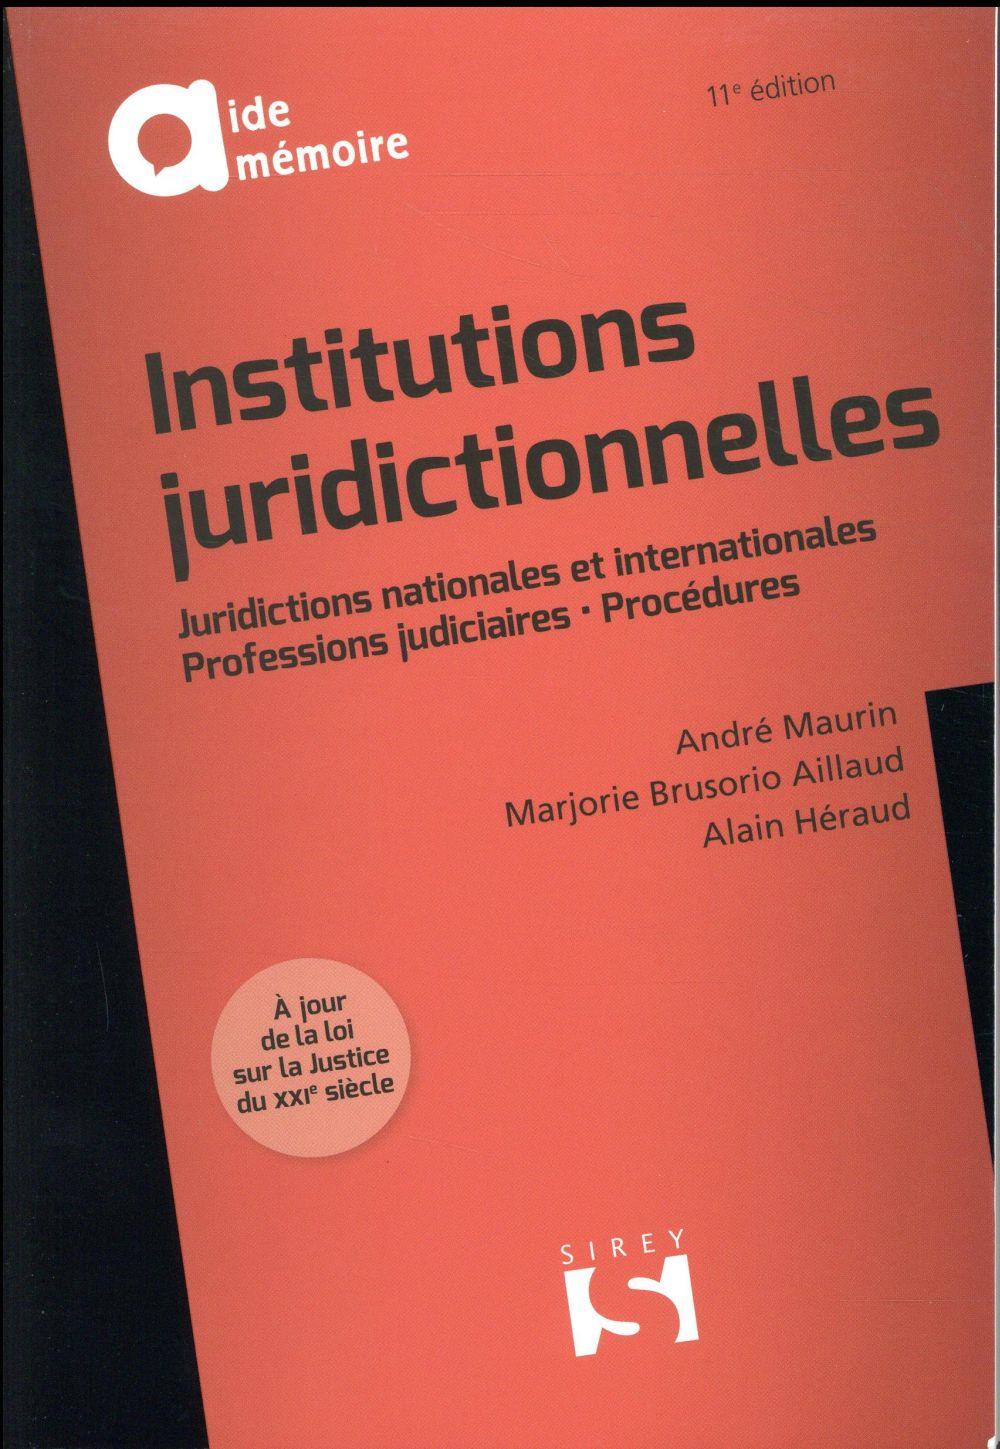 Vente Livre :                                    Institutions juridictionnelles (11e édition)
- André Maurin                                     